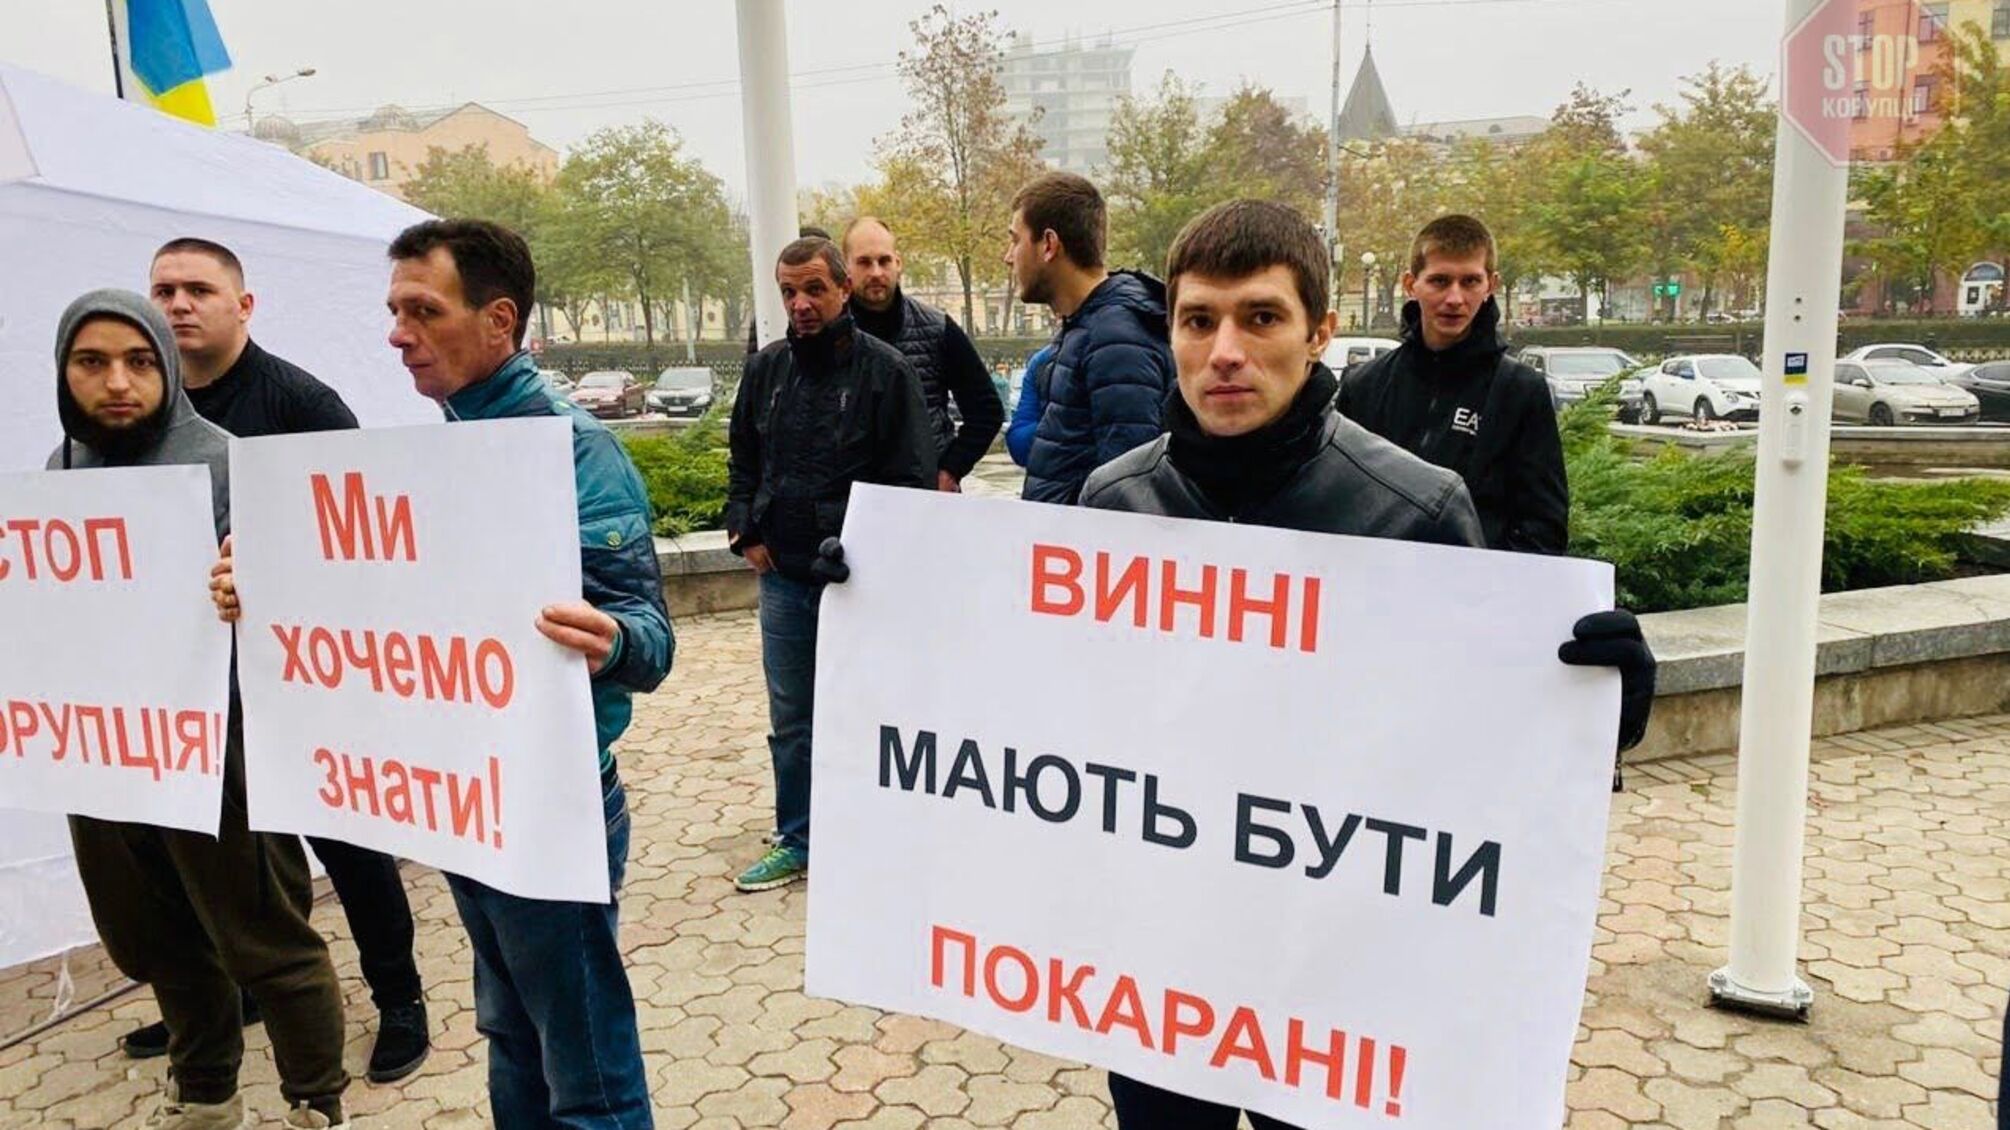 Мішалови, стережіться: у рядах борців із корупцією на Дніпропетровщині – поповнення